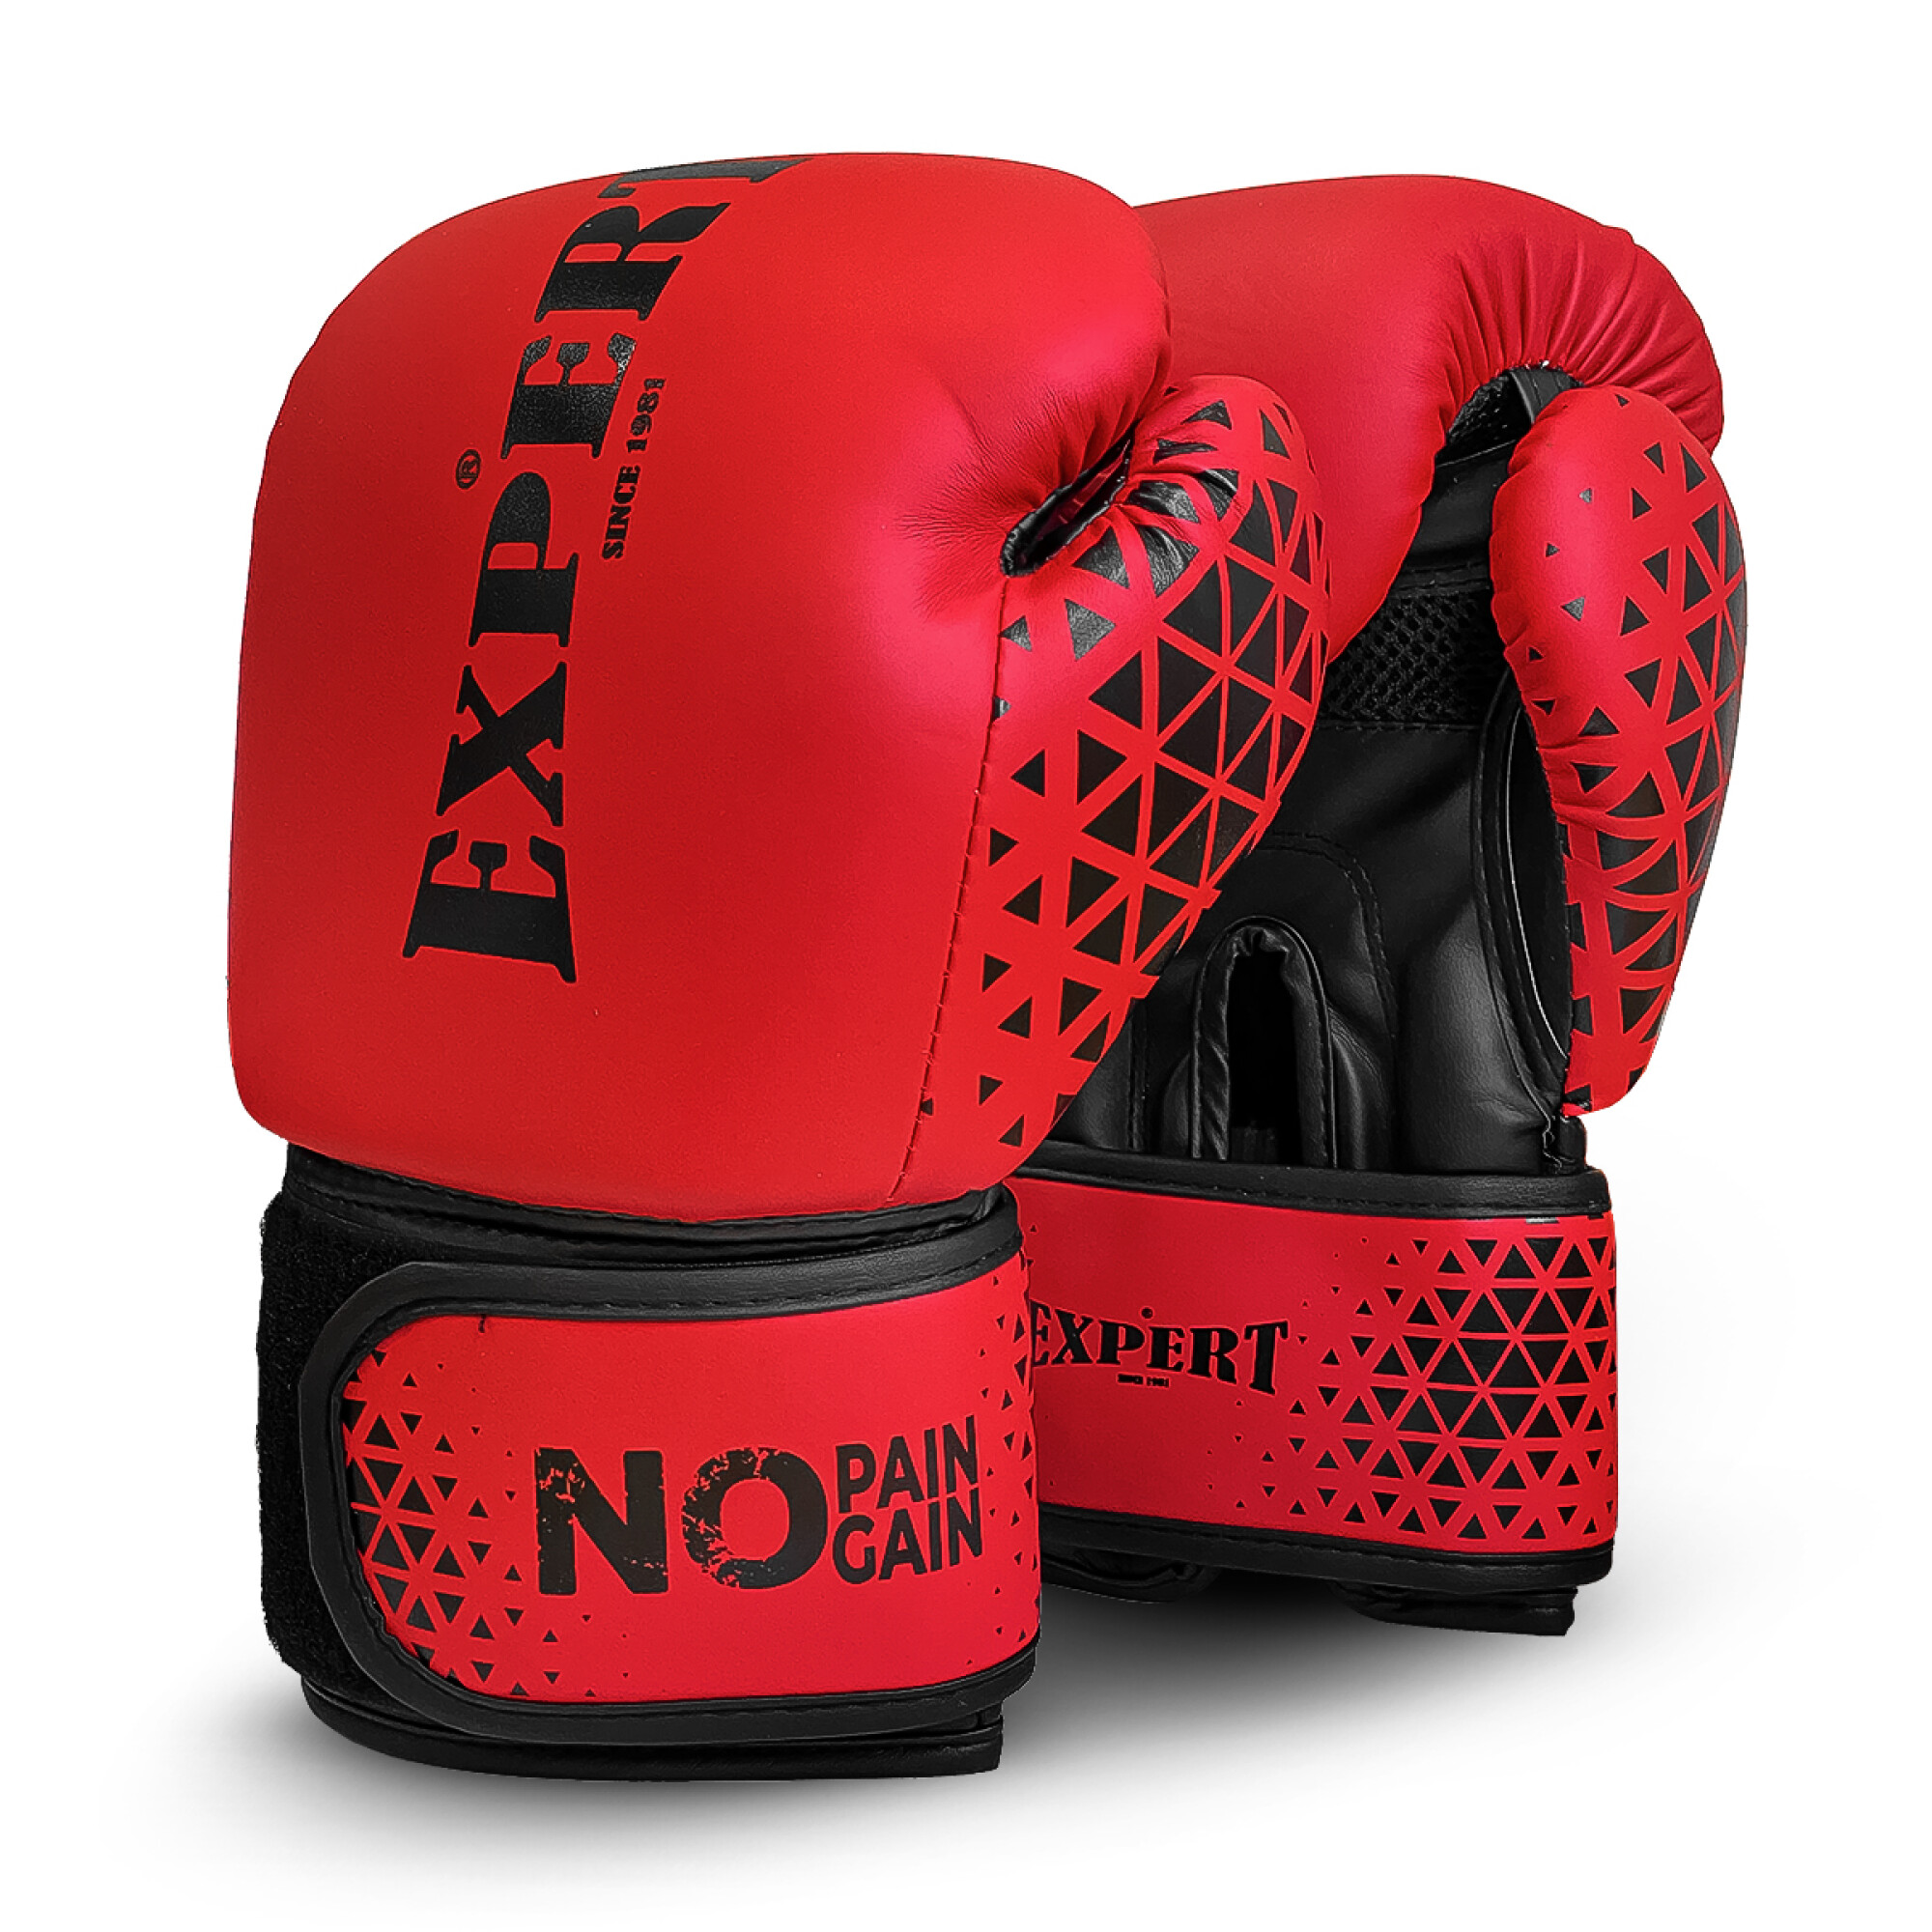 Boxeador deportista peleando con guantes rojos en jaula de boxeo interior  retrato de boxeador profesional